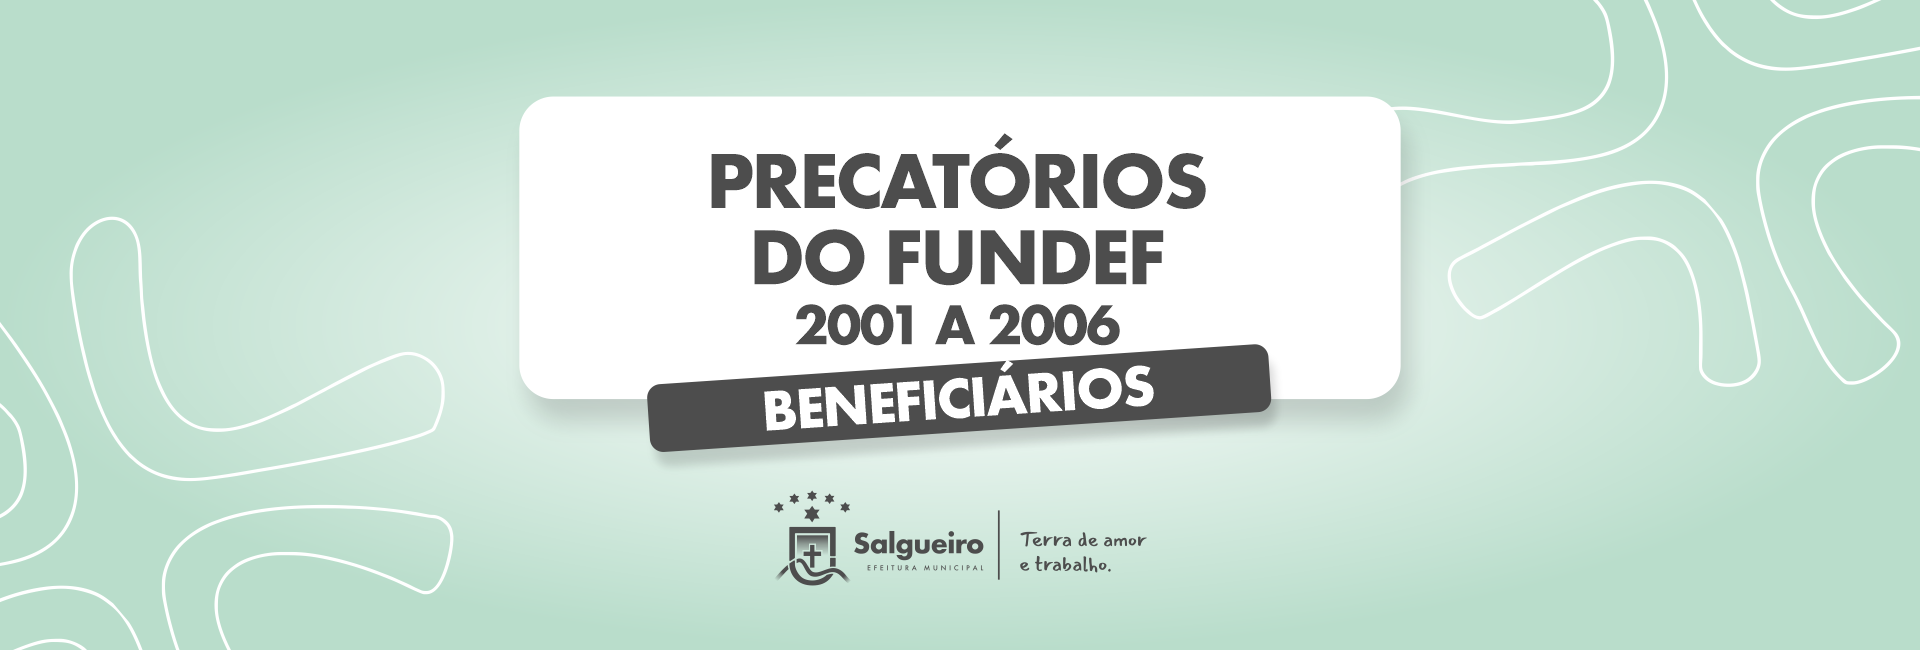 Precatórios do FUNDEF 2001 A 2006.